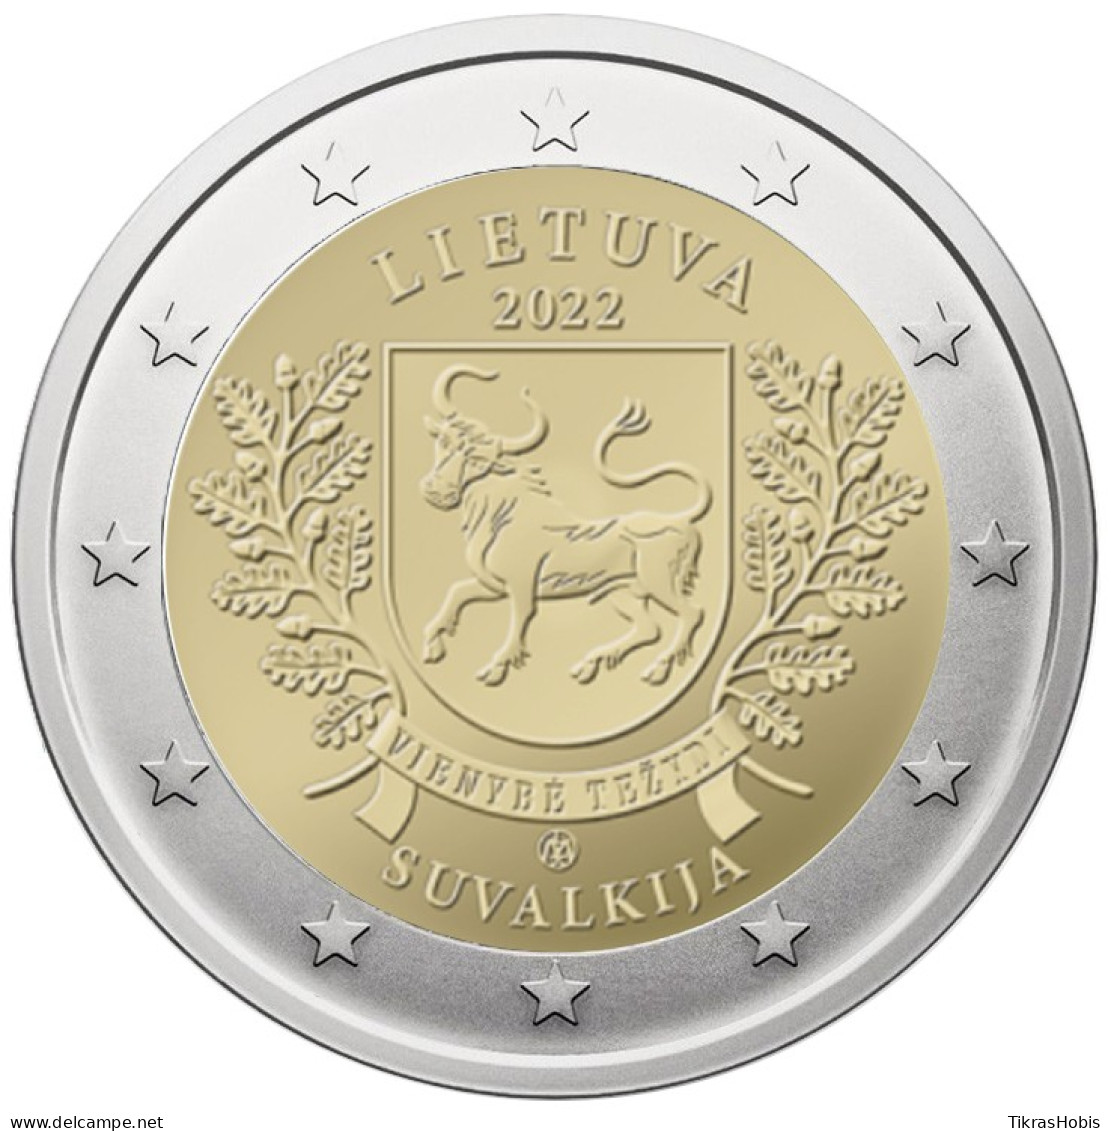 Lithuania 2 Euro, 2022 Suvalkija - Litouwen